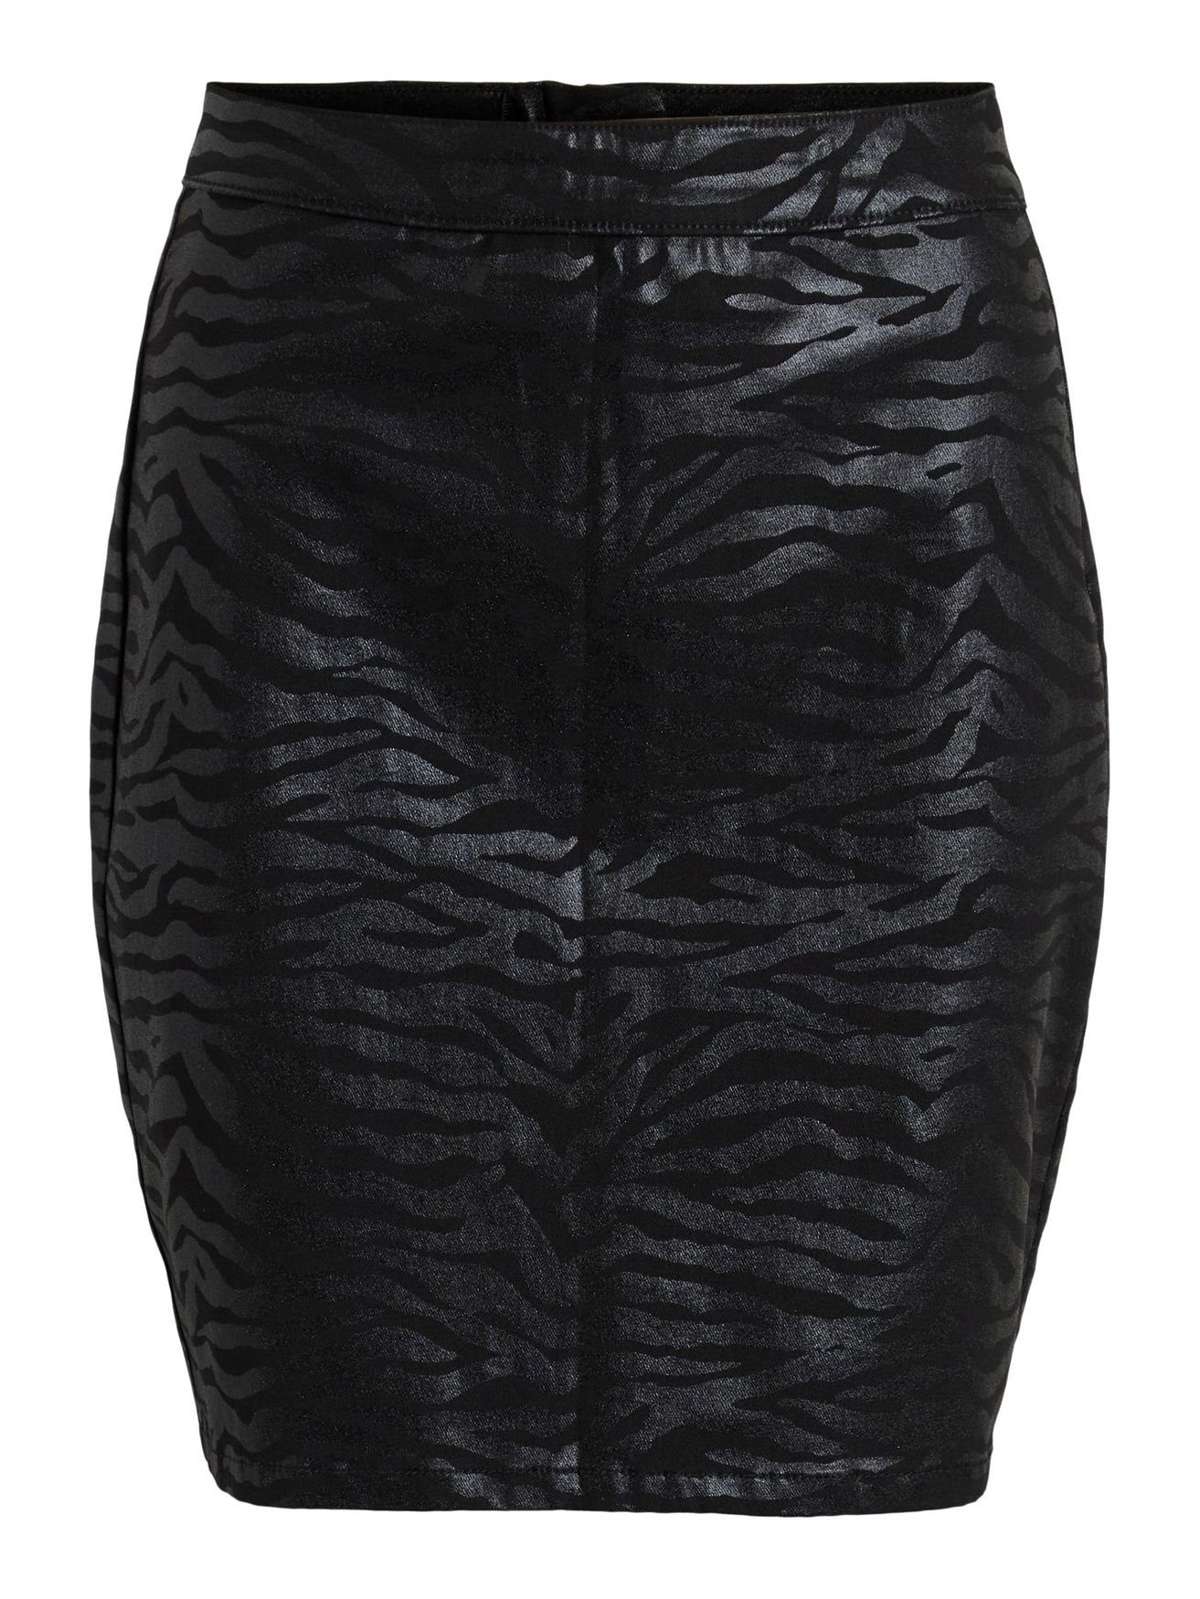 Летняя юбка мини-карандаш из искусственной кожи с эластичным покрытием и животным принтом VISIB 4675 черного цвета